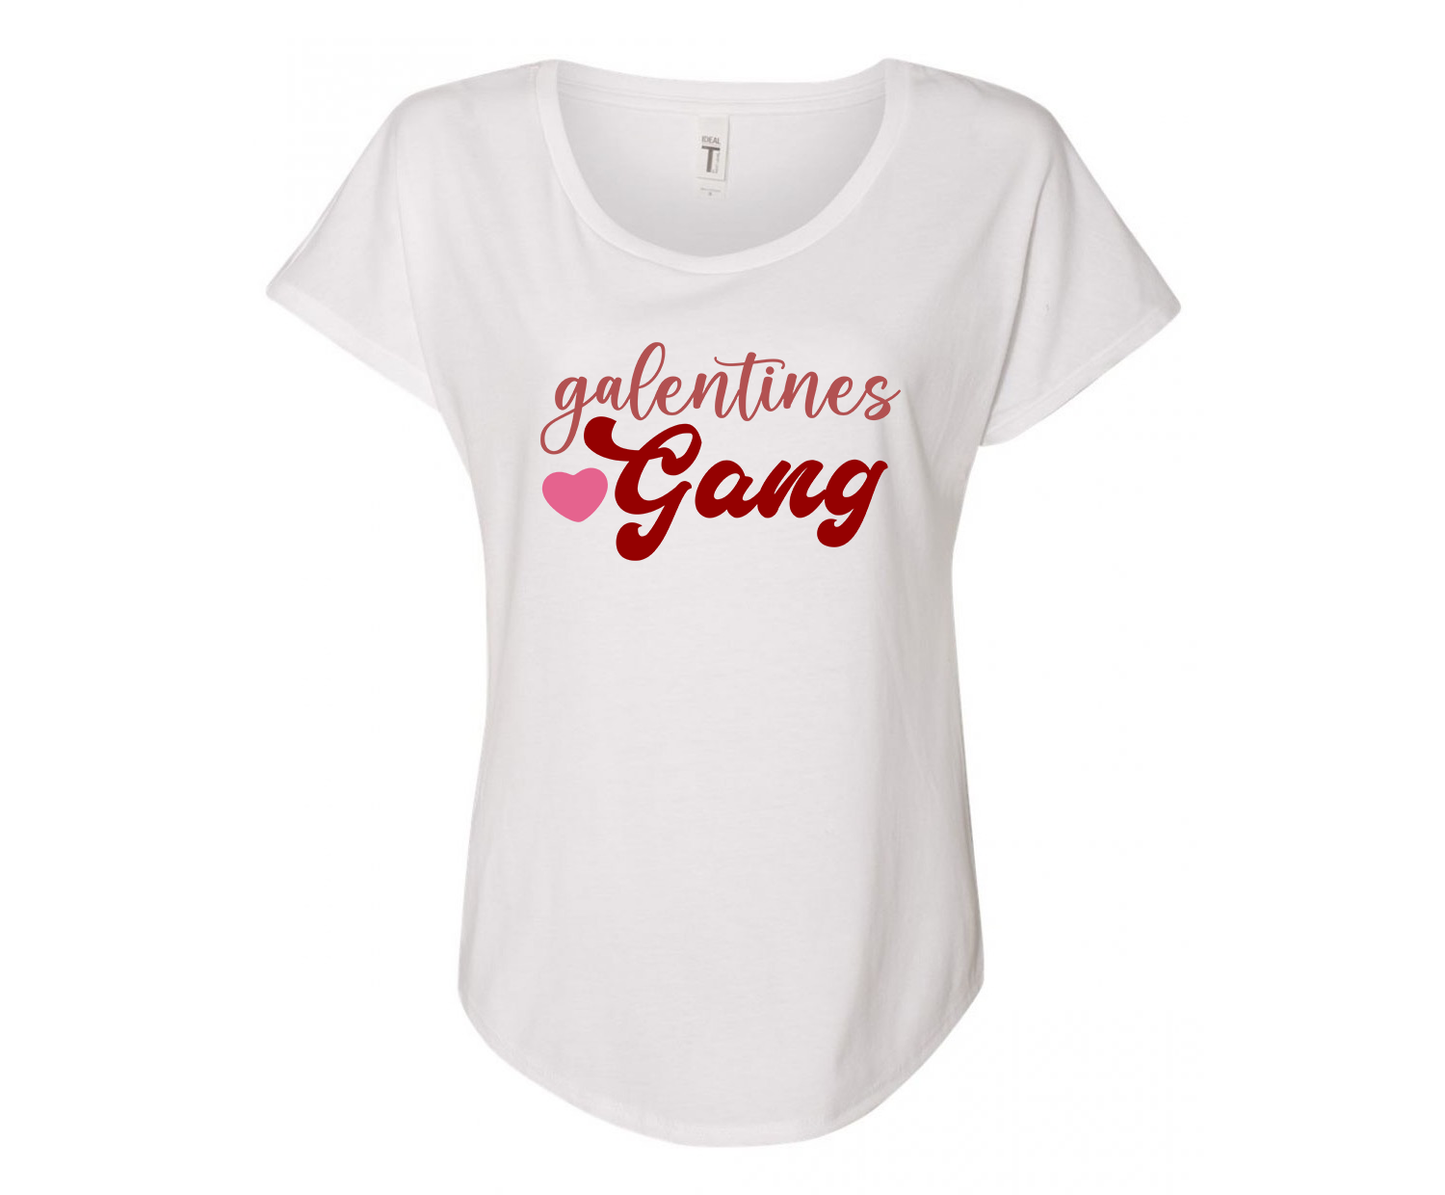 Galantine Gang Ladies Tee Shirt - In Grey & White